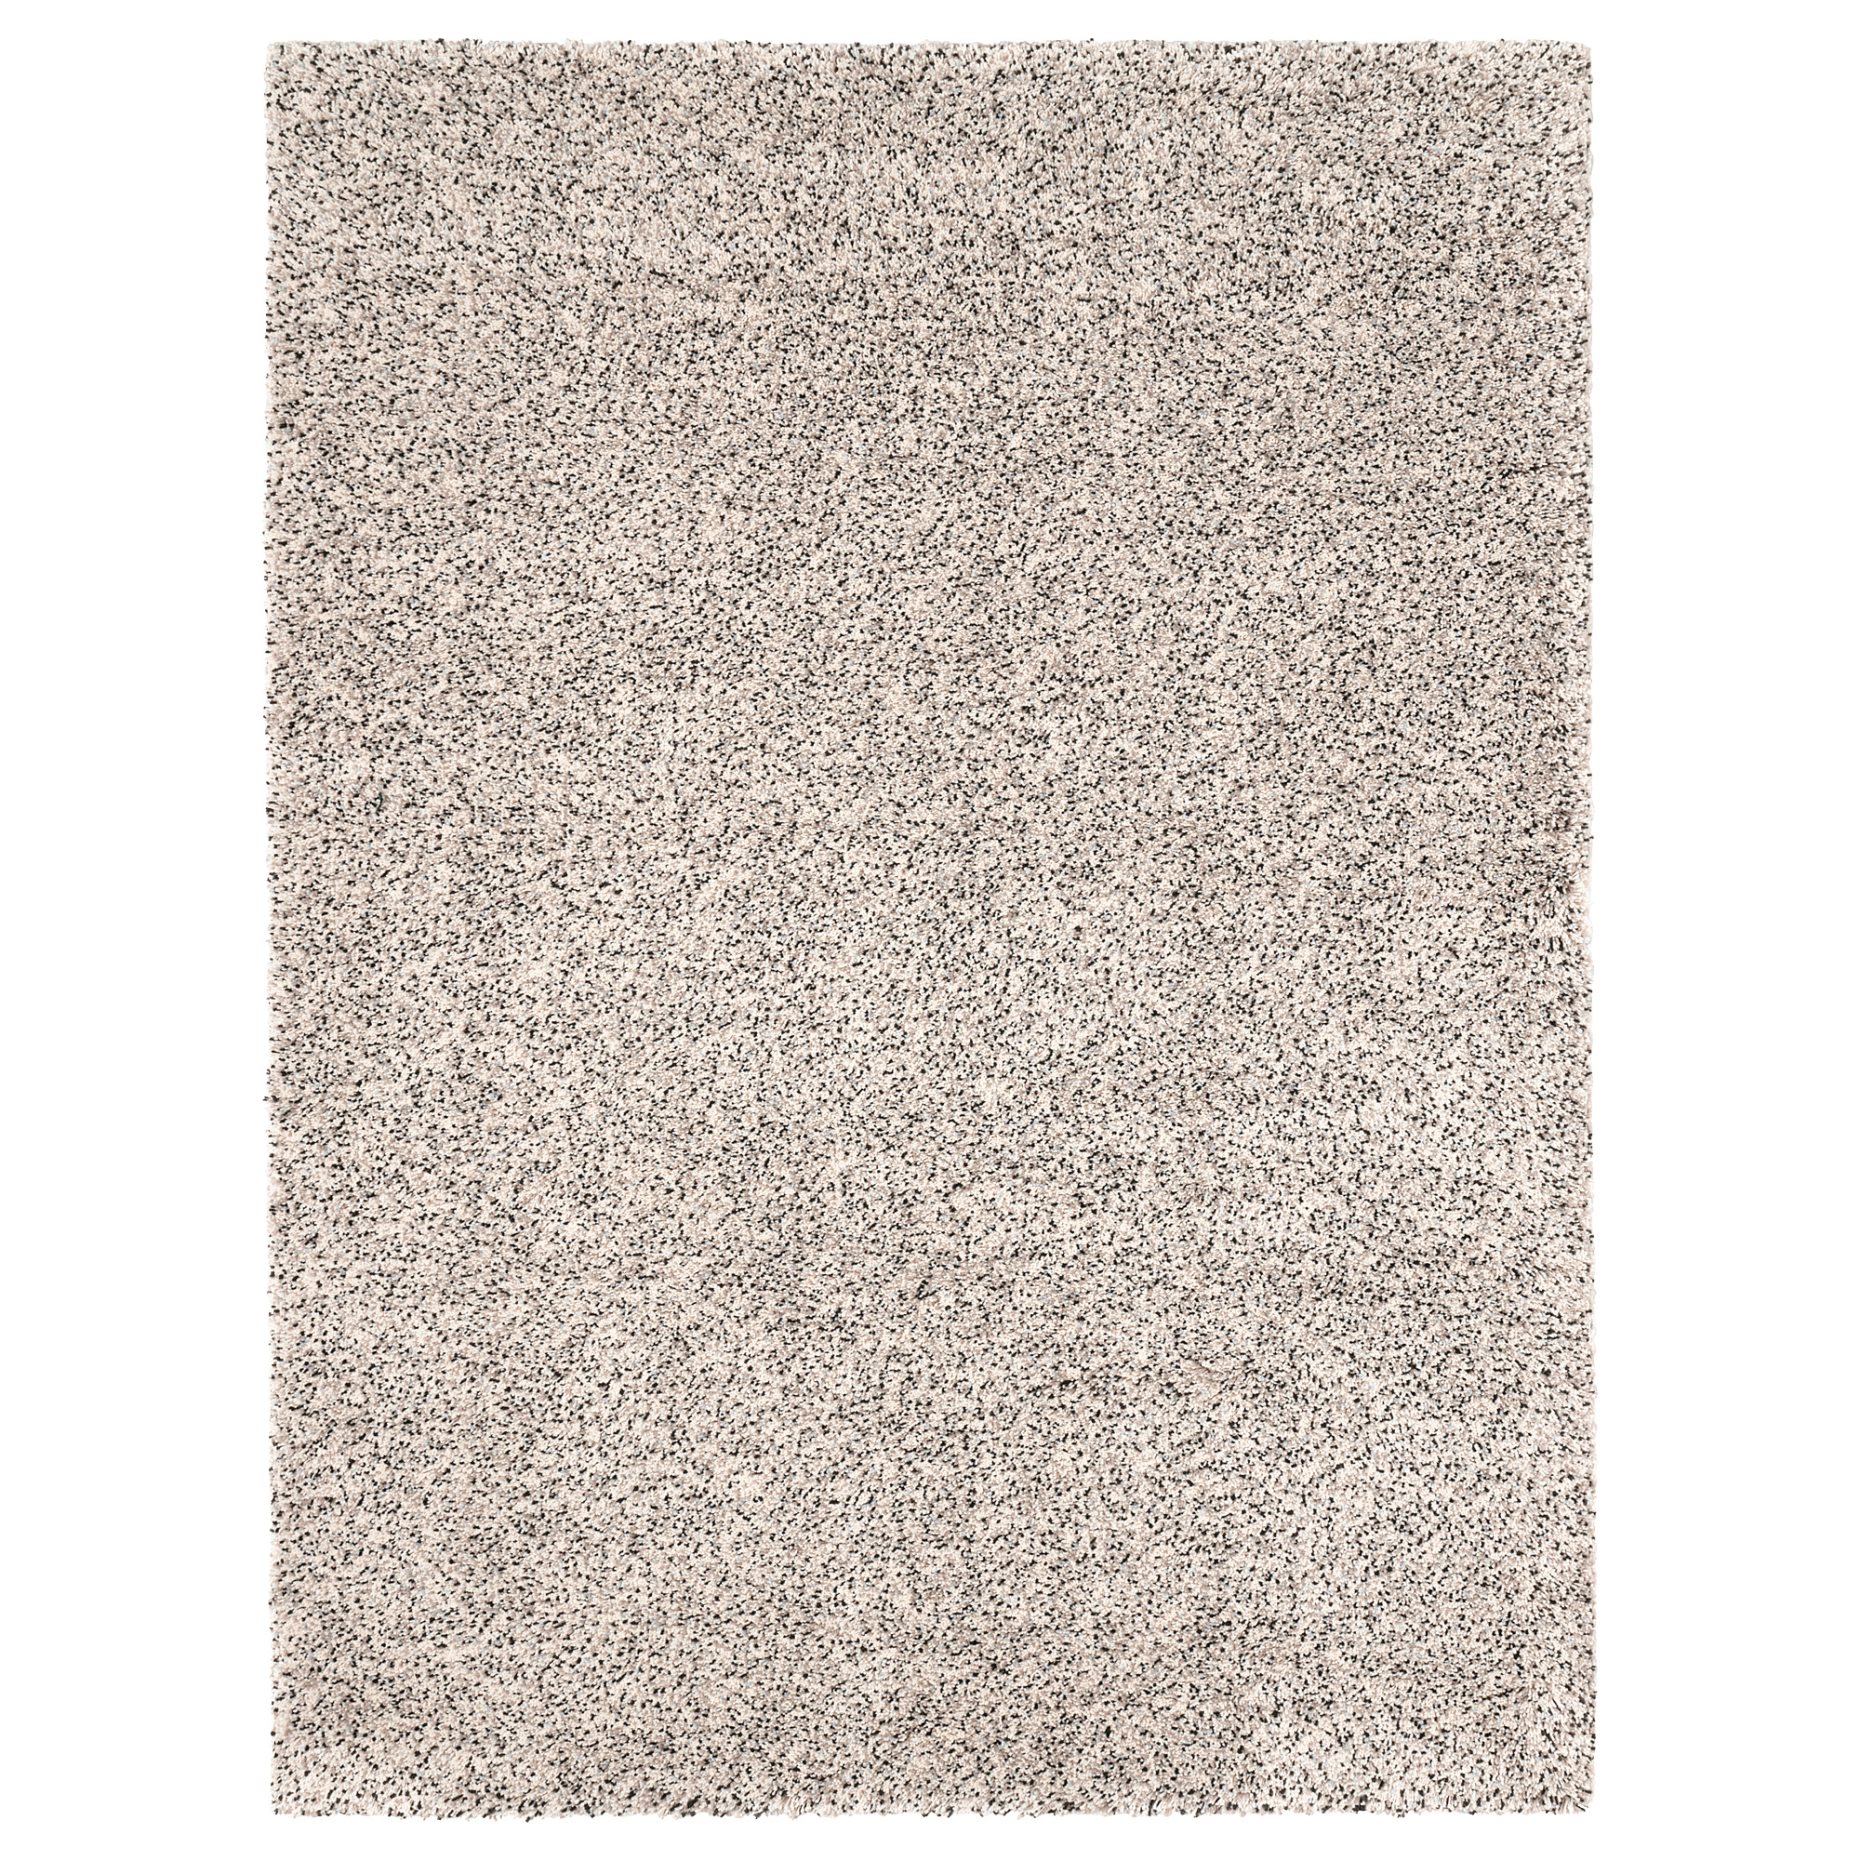 VINDUM, rug high pile, 200x270 cm, 003.449.84